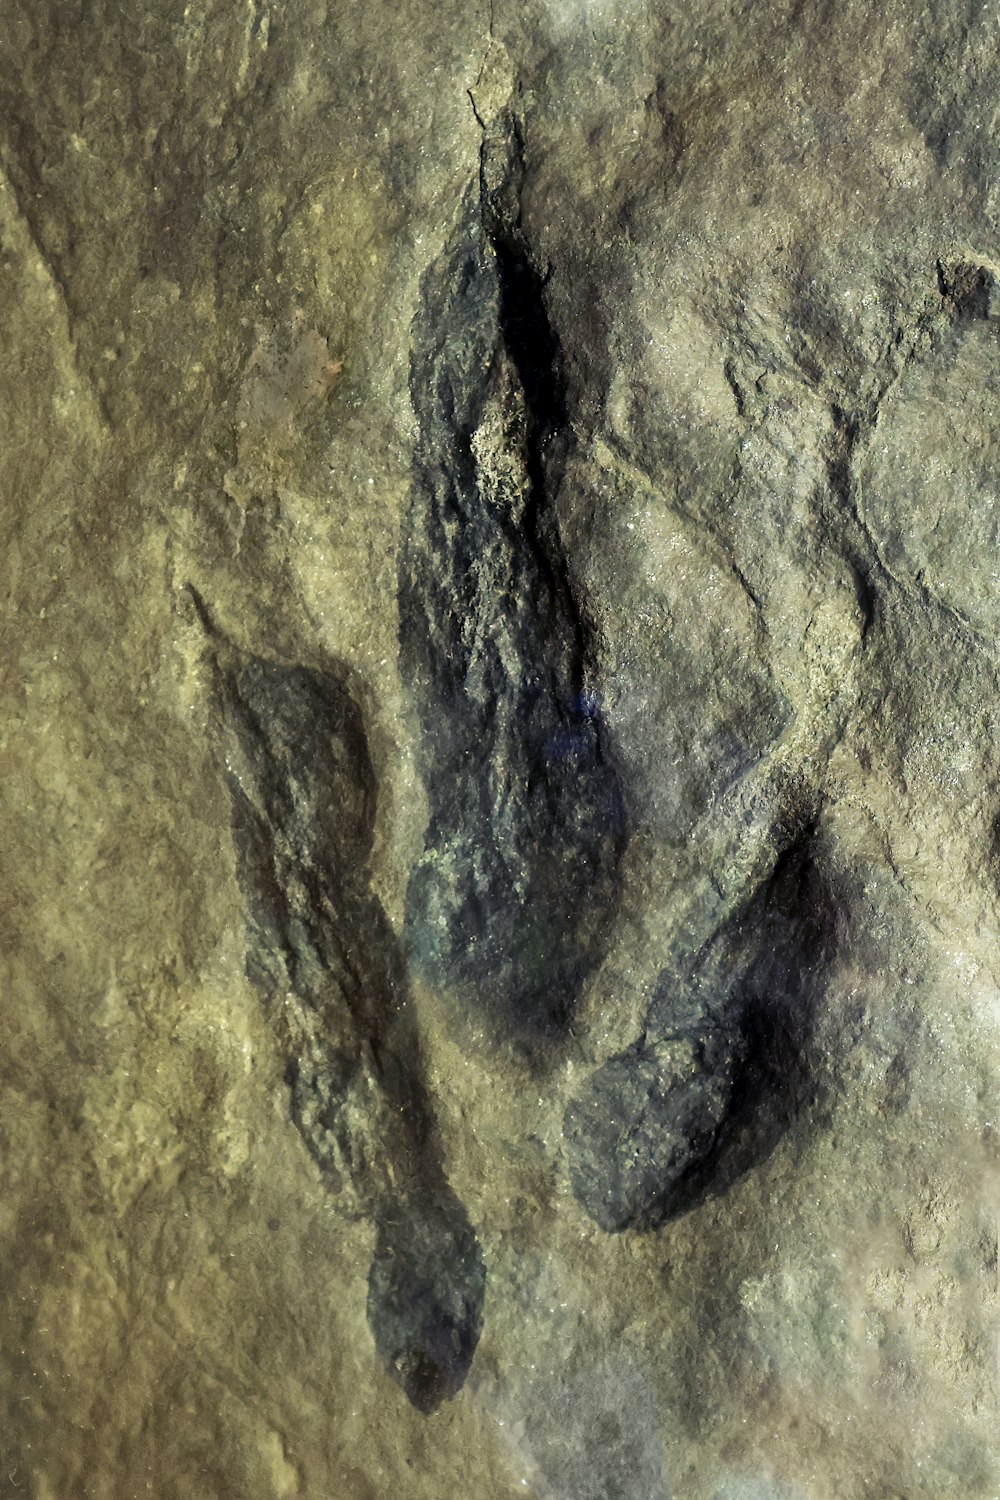 un'immagine di una formazione rocciosa con impronte su di essa